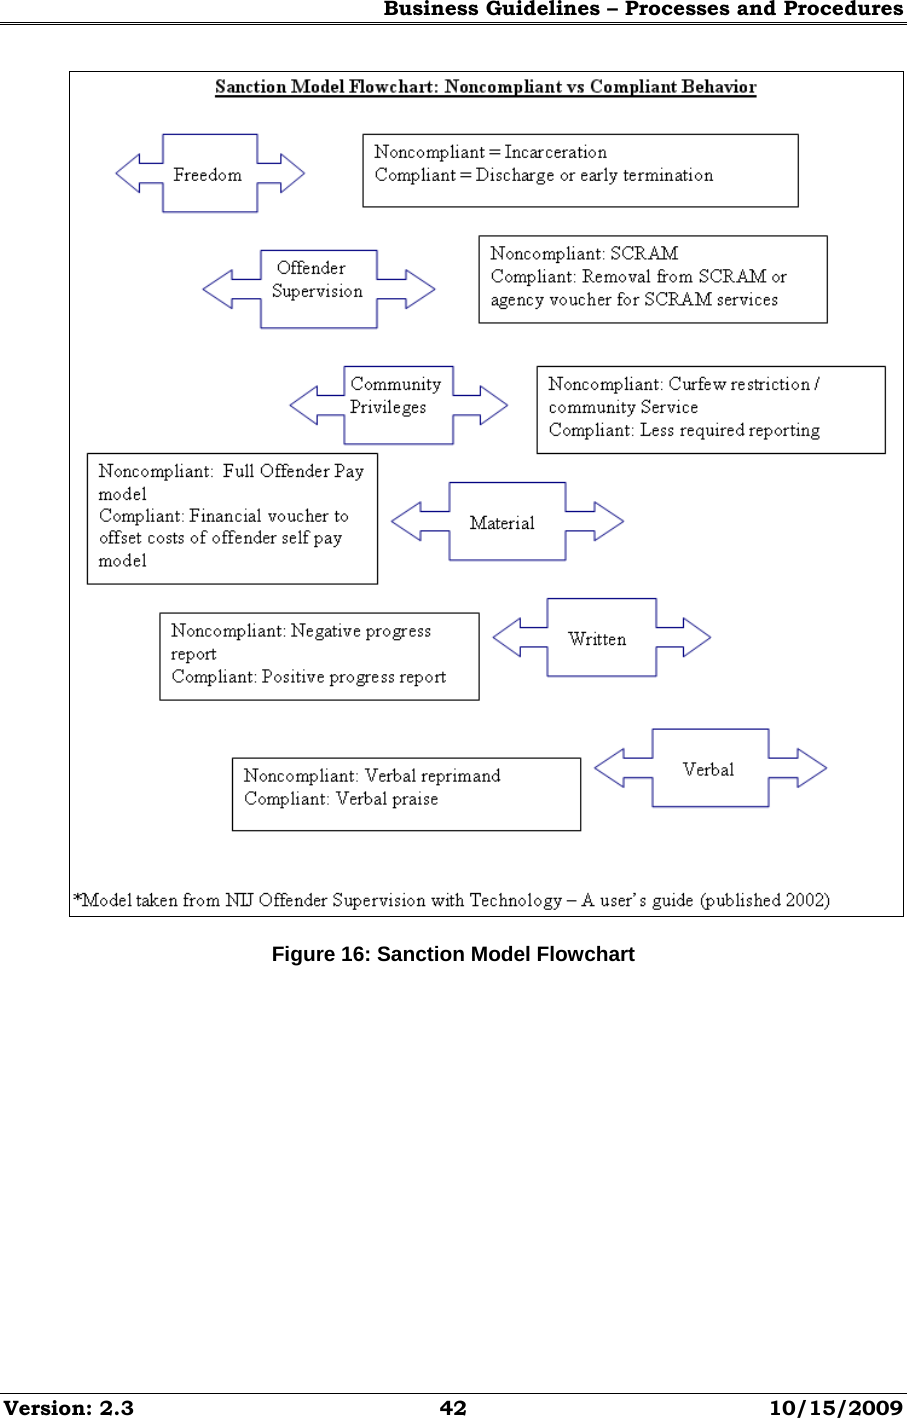 Business Guidelines – Processes and Procedures Version: 2.3  42  10/15/2009  Figure 16: Sanction Model Flowchart 